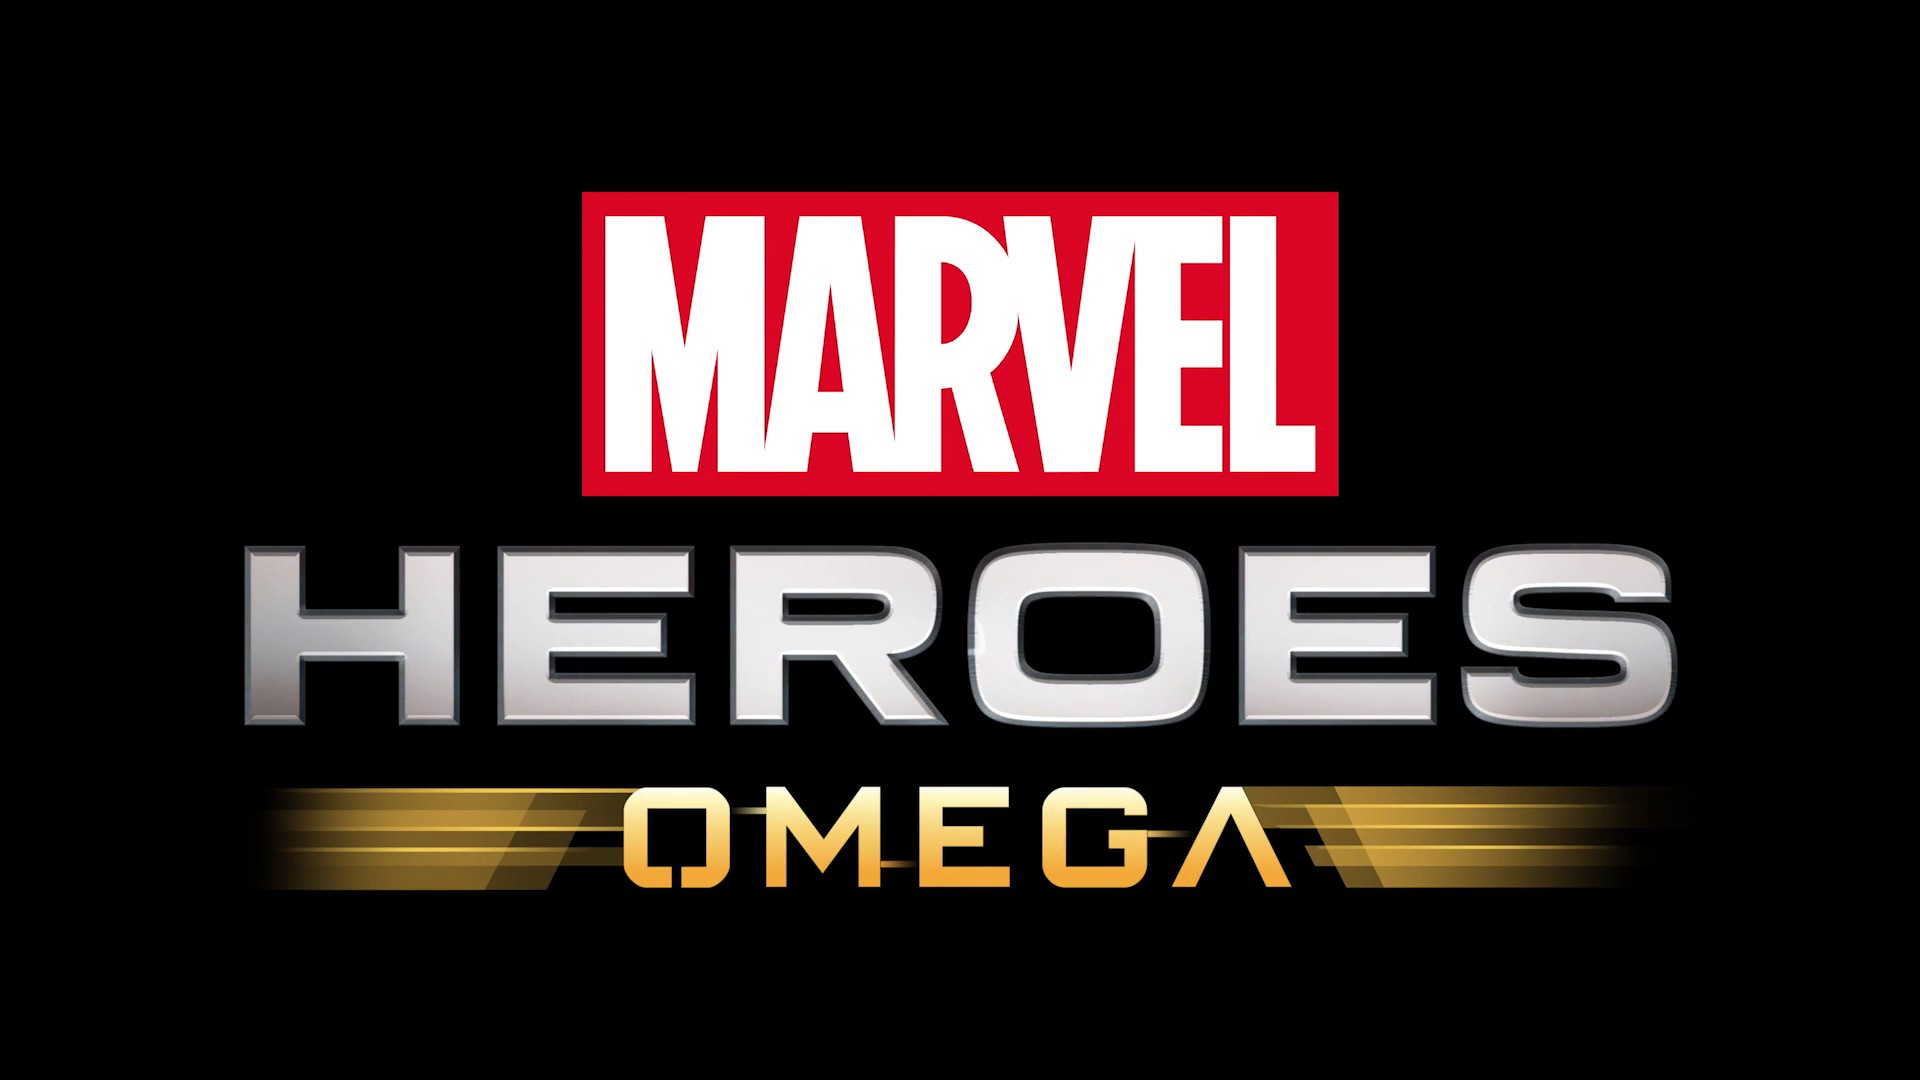 Marvel Heroes Omega переберётся на консоли